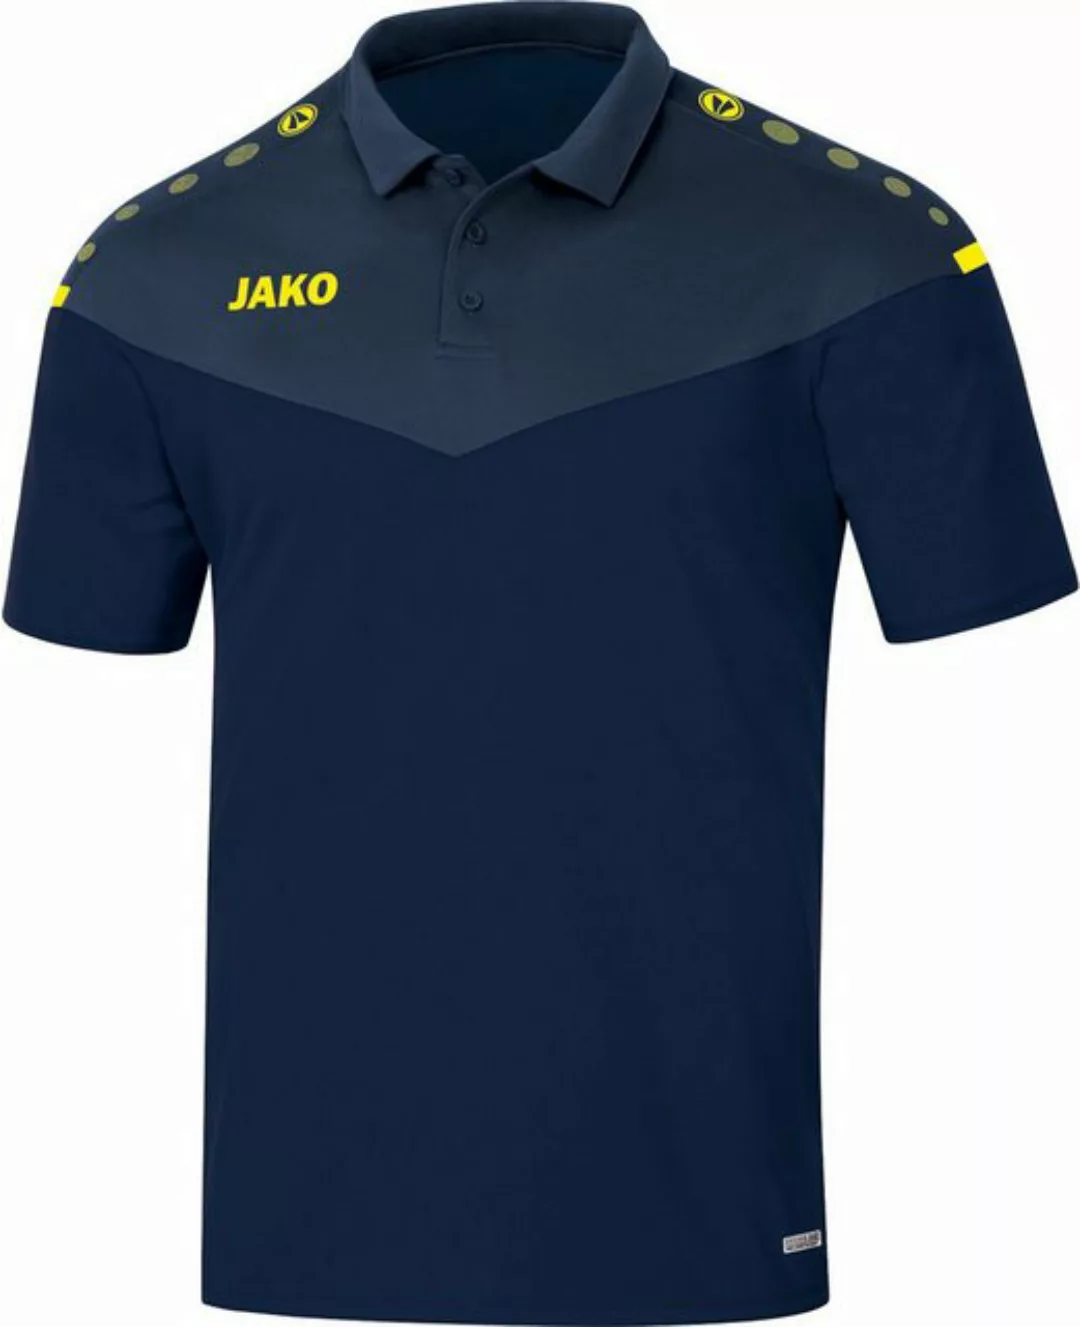 Jako Poloshirt Polo Champ 2.0 - Herren Poloshirt - marine/darkblue/neongelb günstig online kaufen